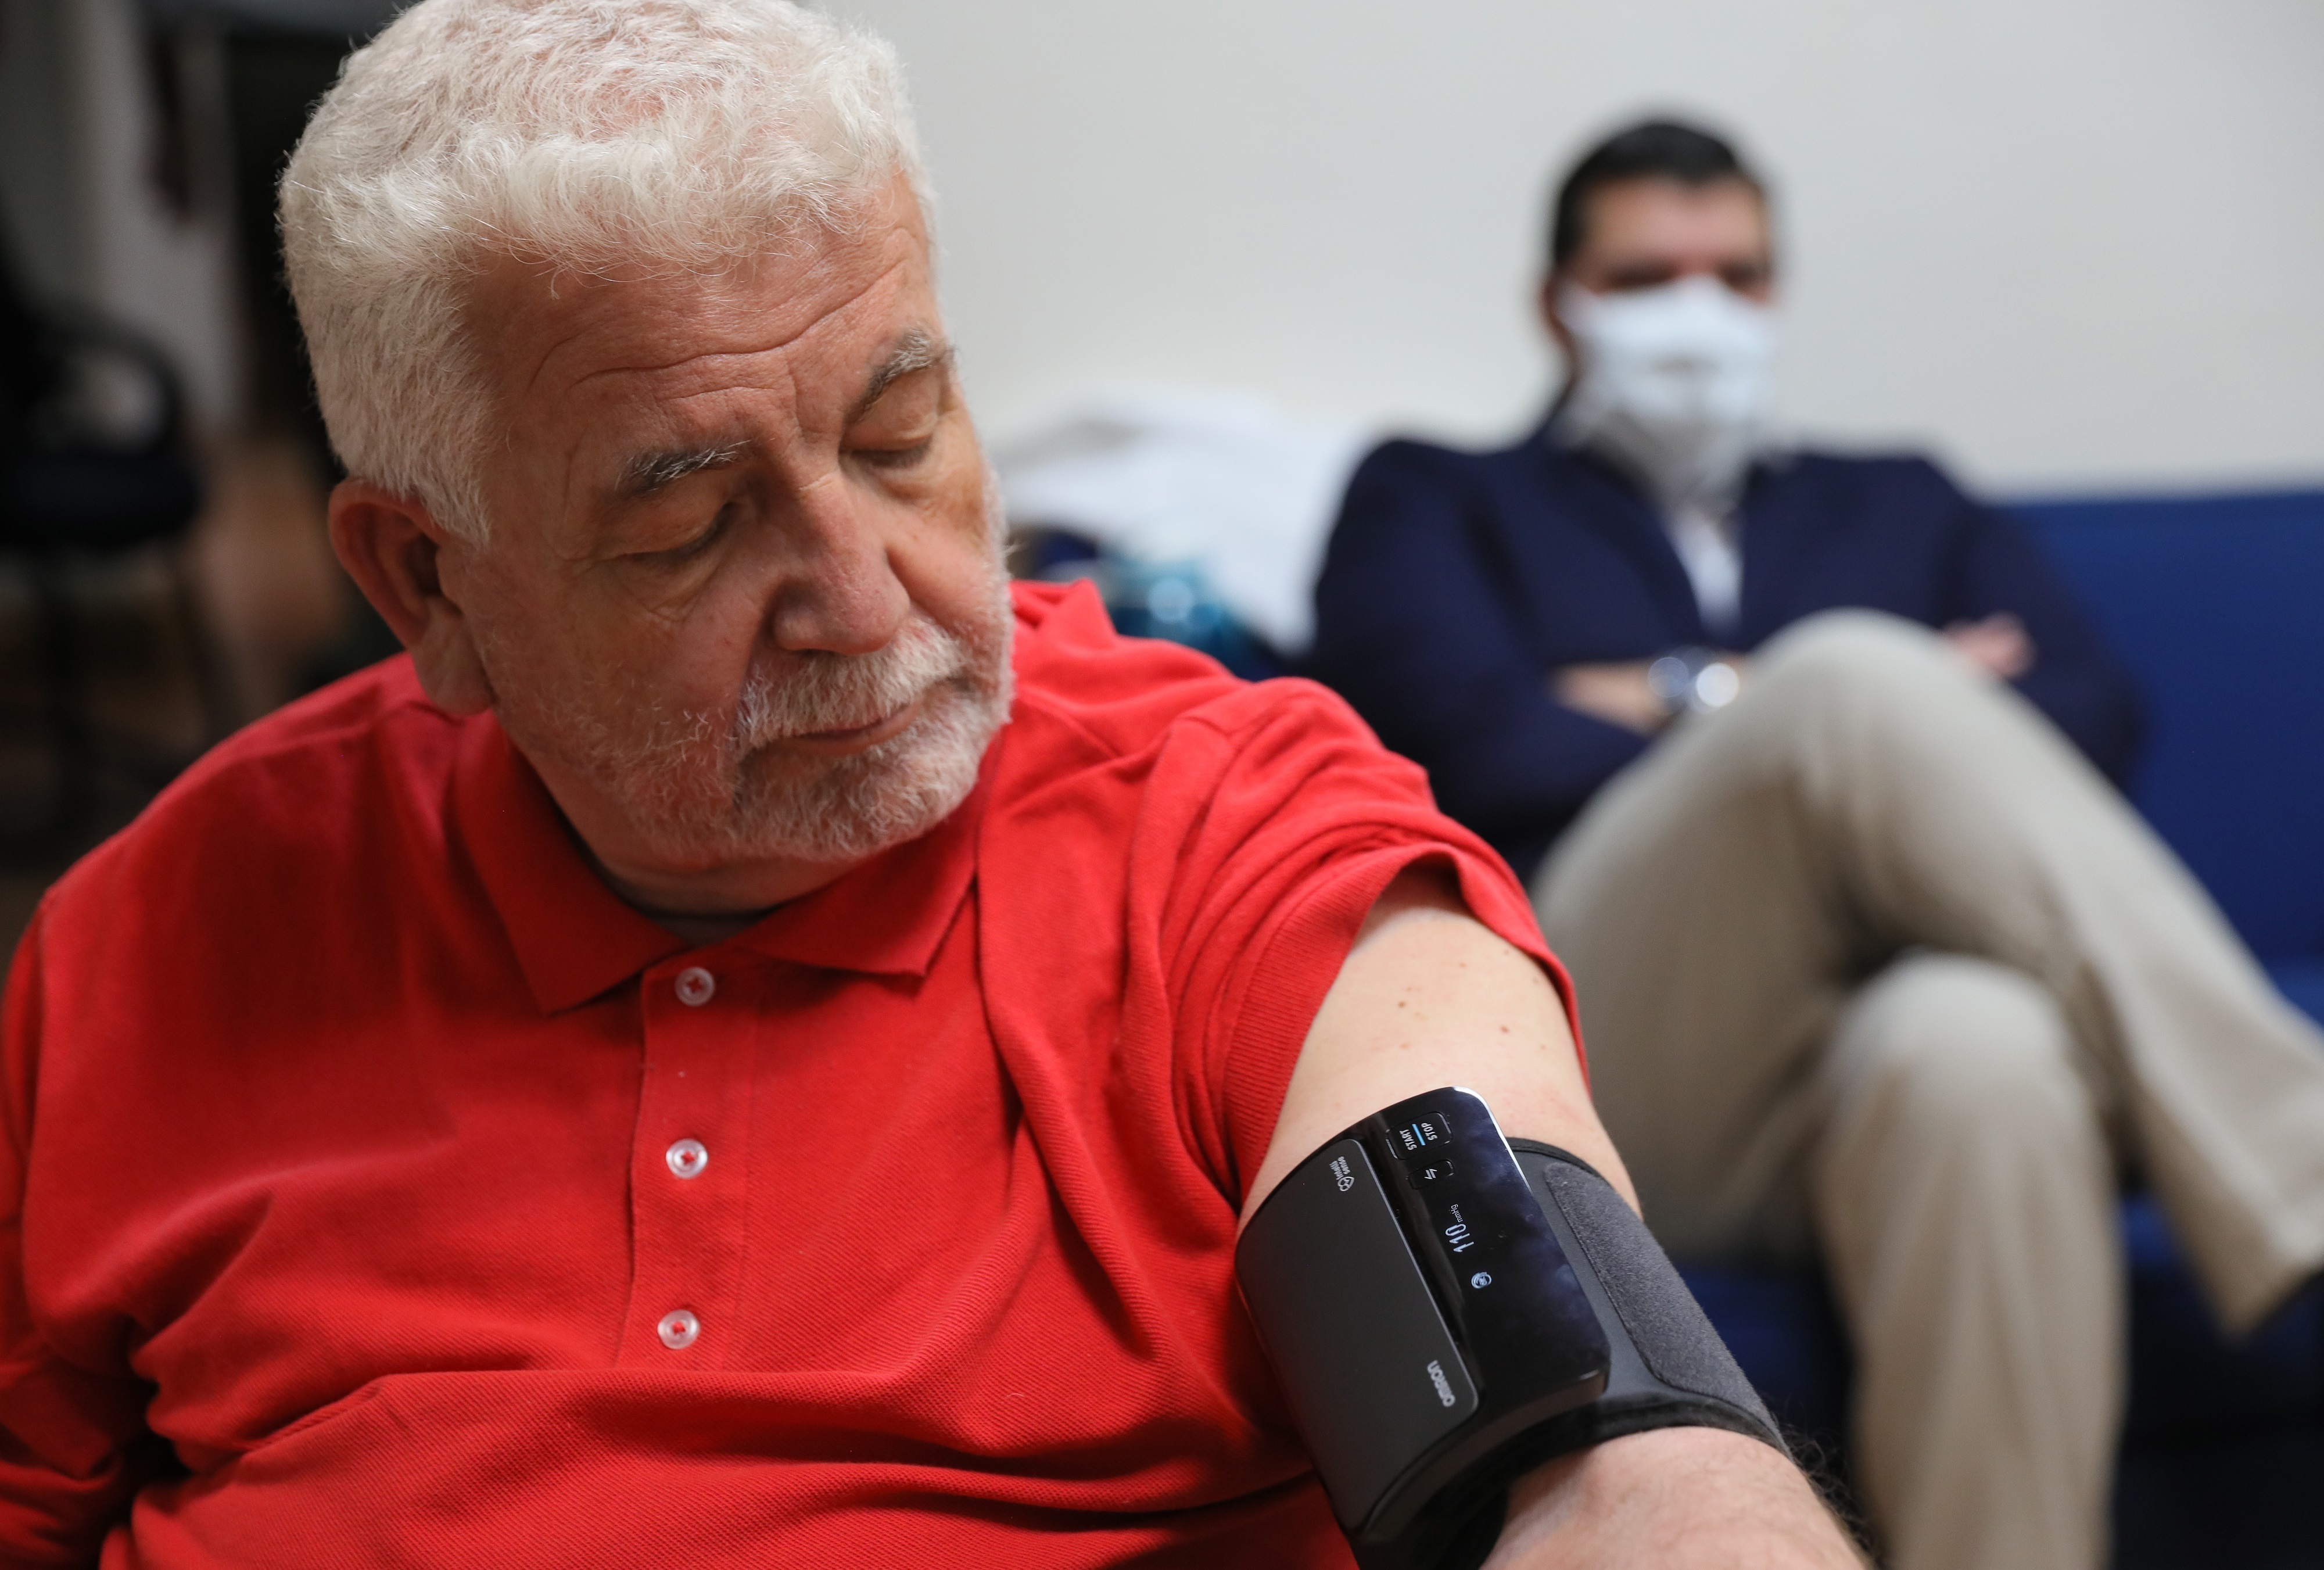 Un hombre espera mientras le toman la presión arterial. EFE/Alex Cruz/Archivo
